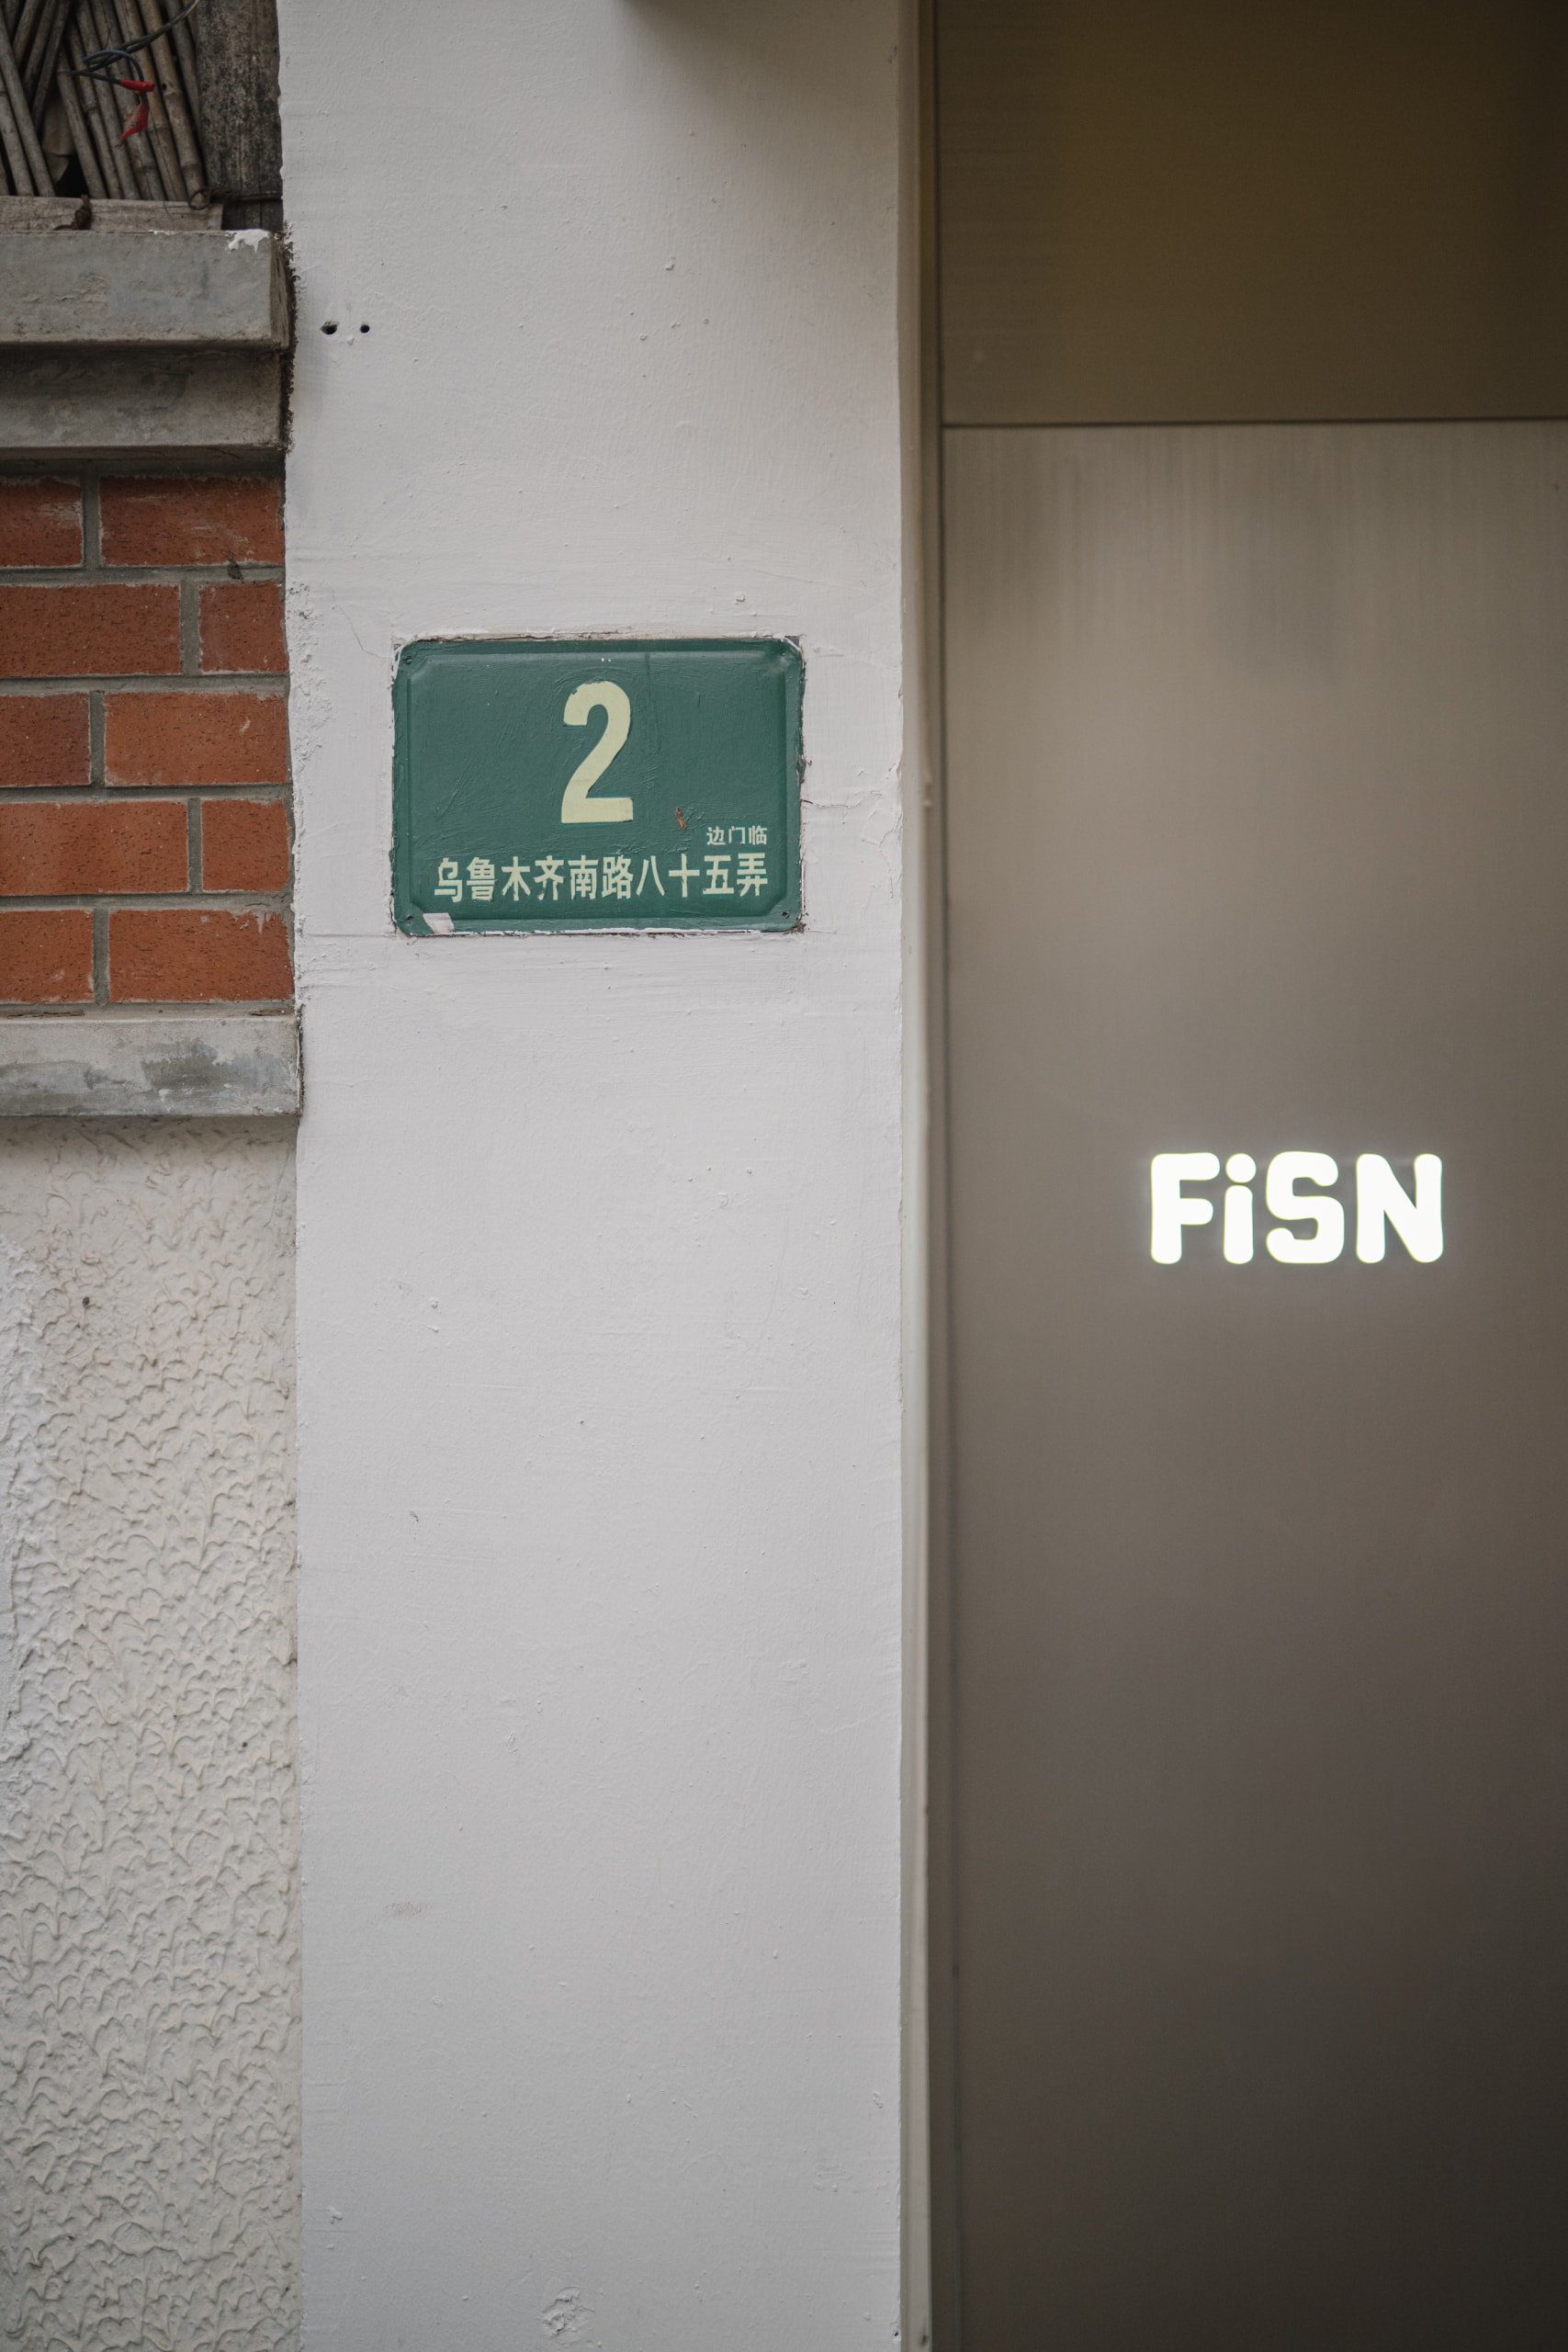 走进 FiSN 全新上海门店